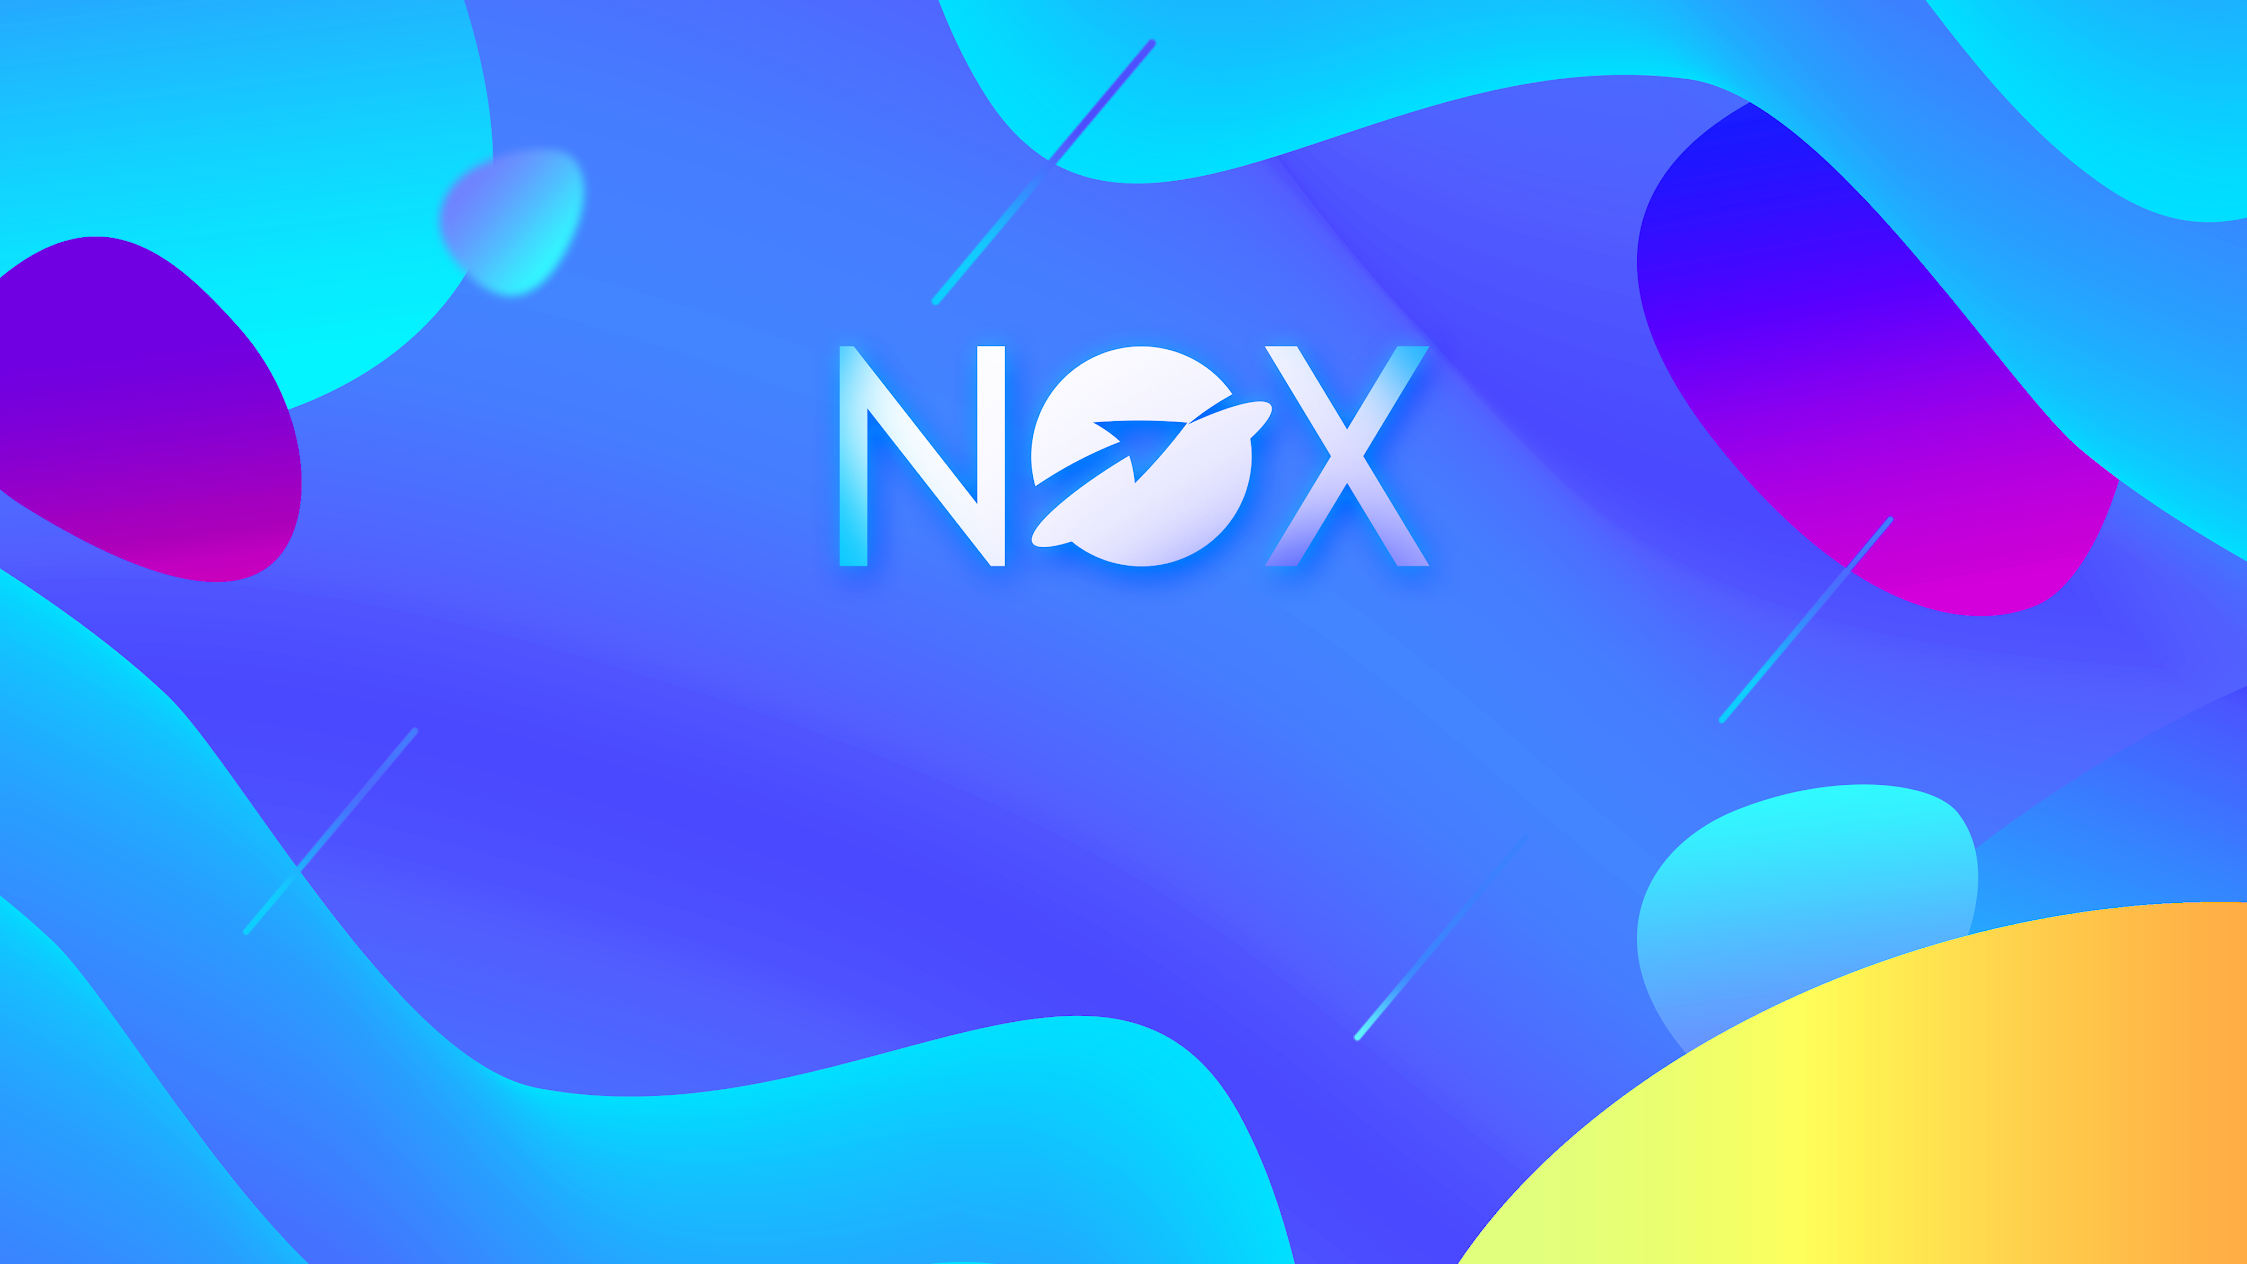 Nox Limited